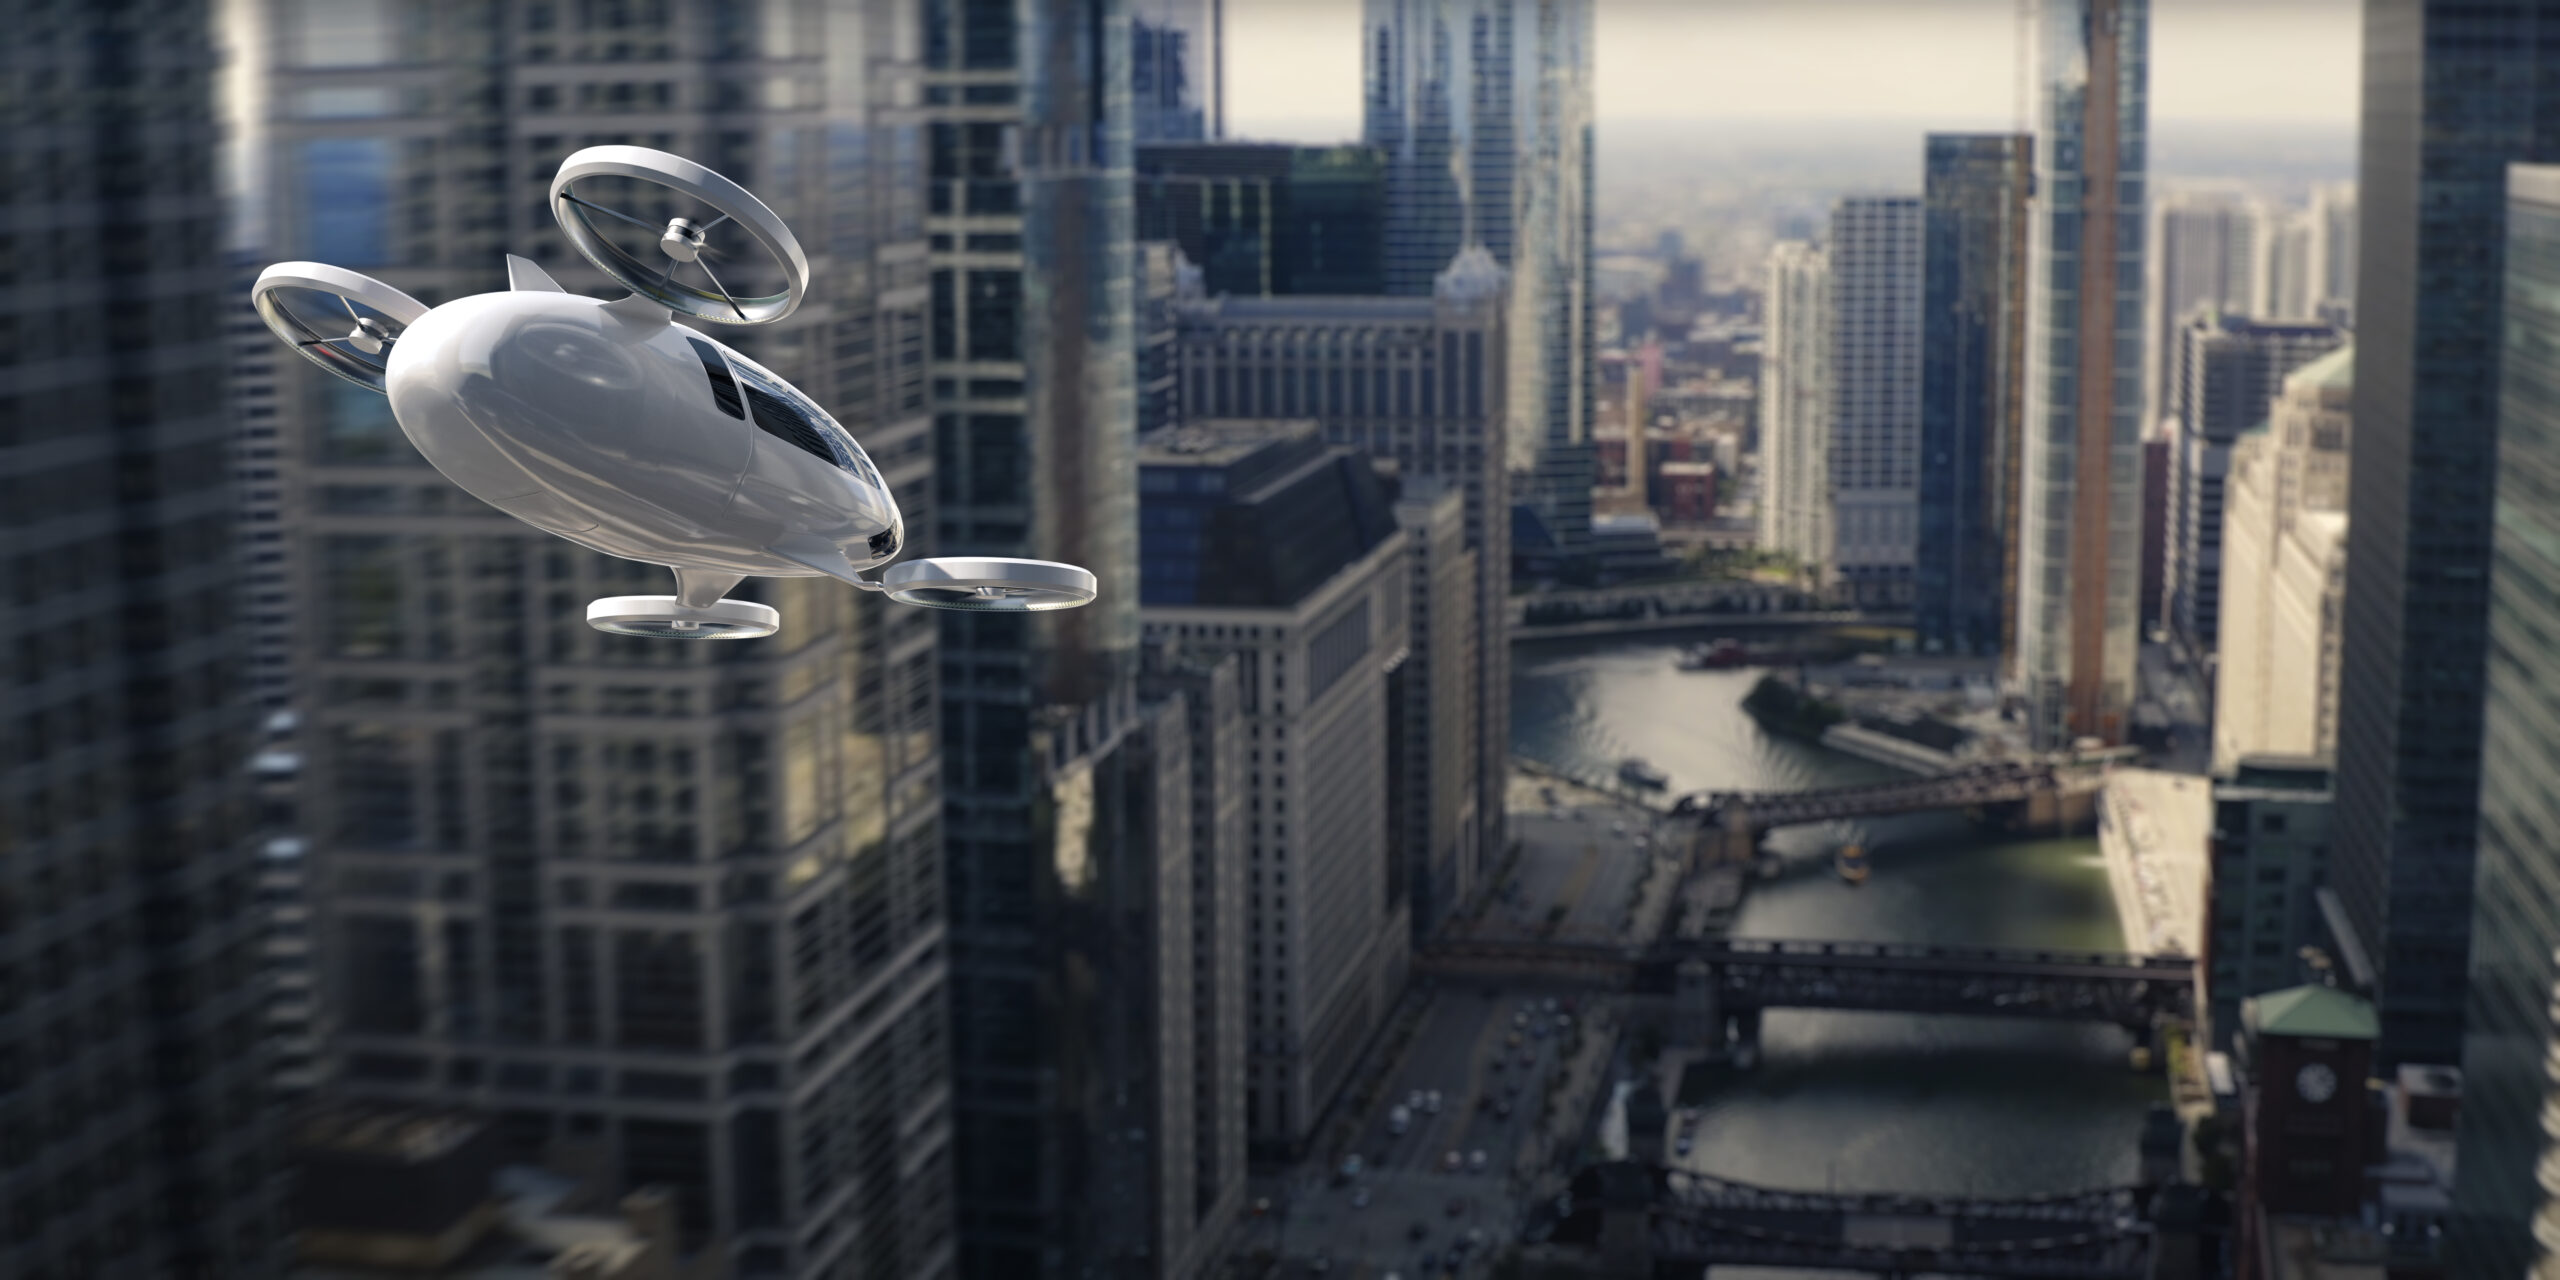 UAV flying between buildings